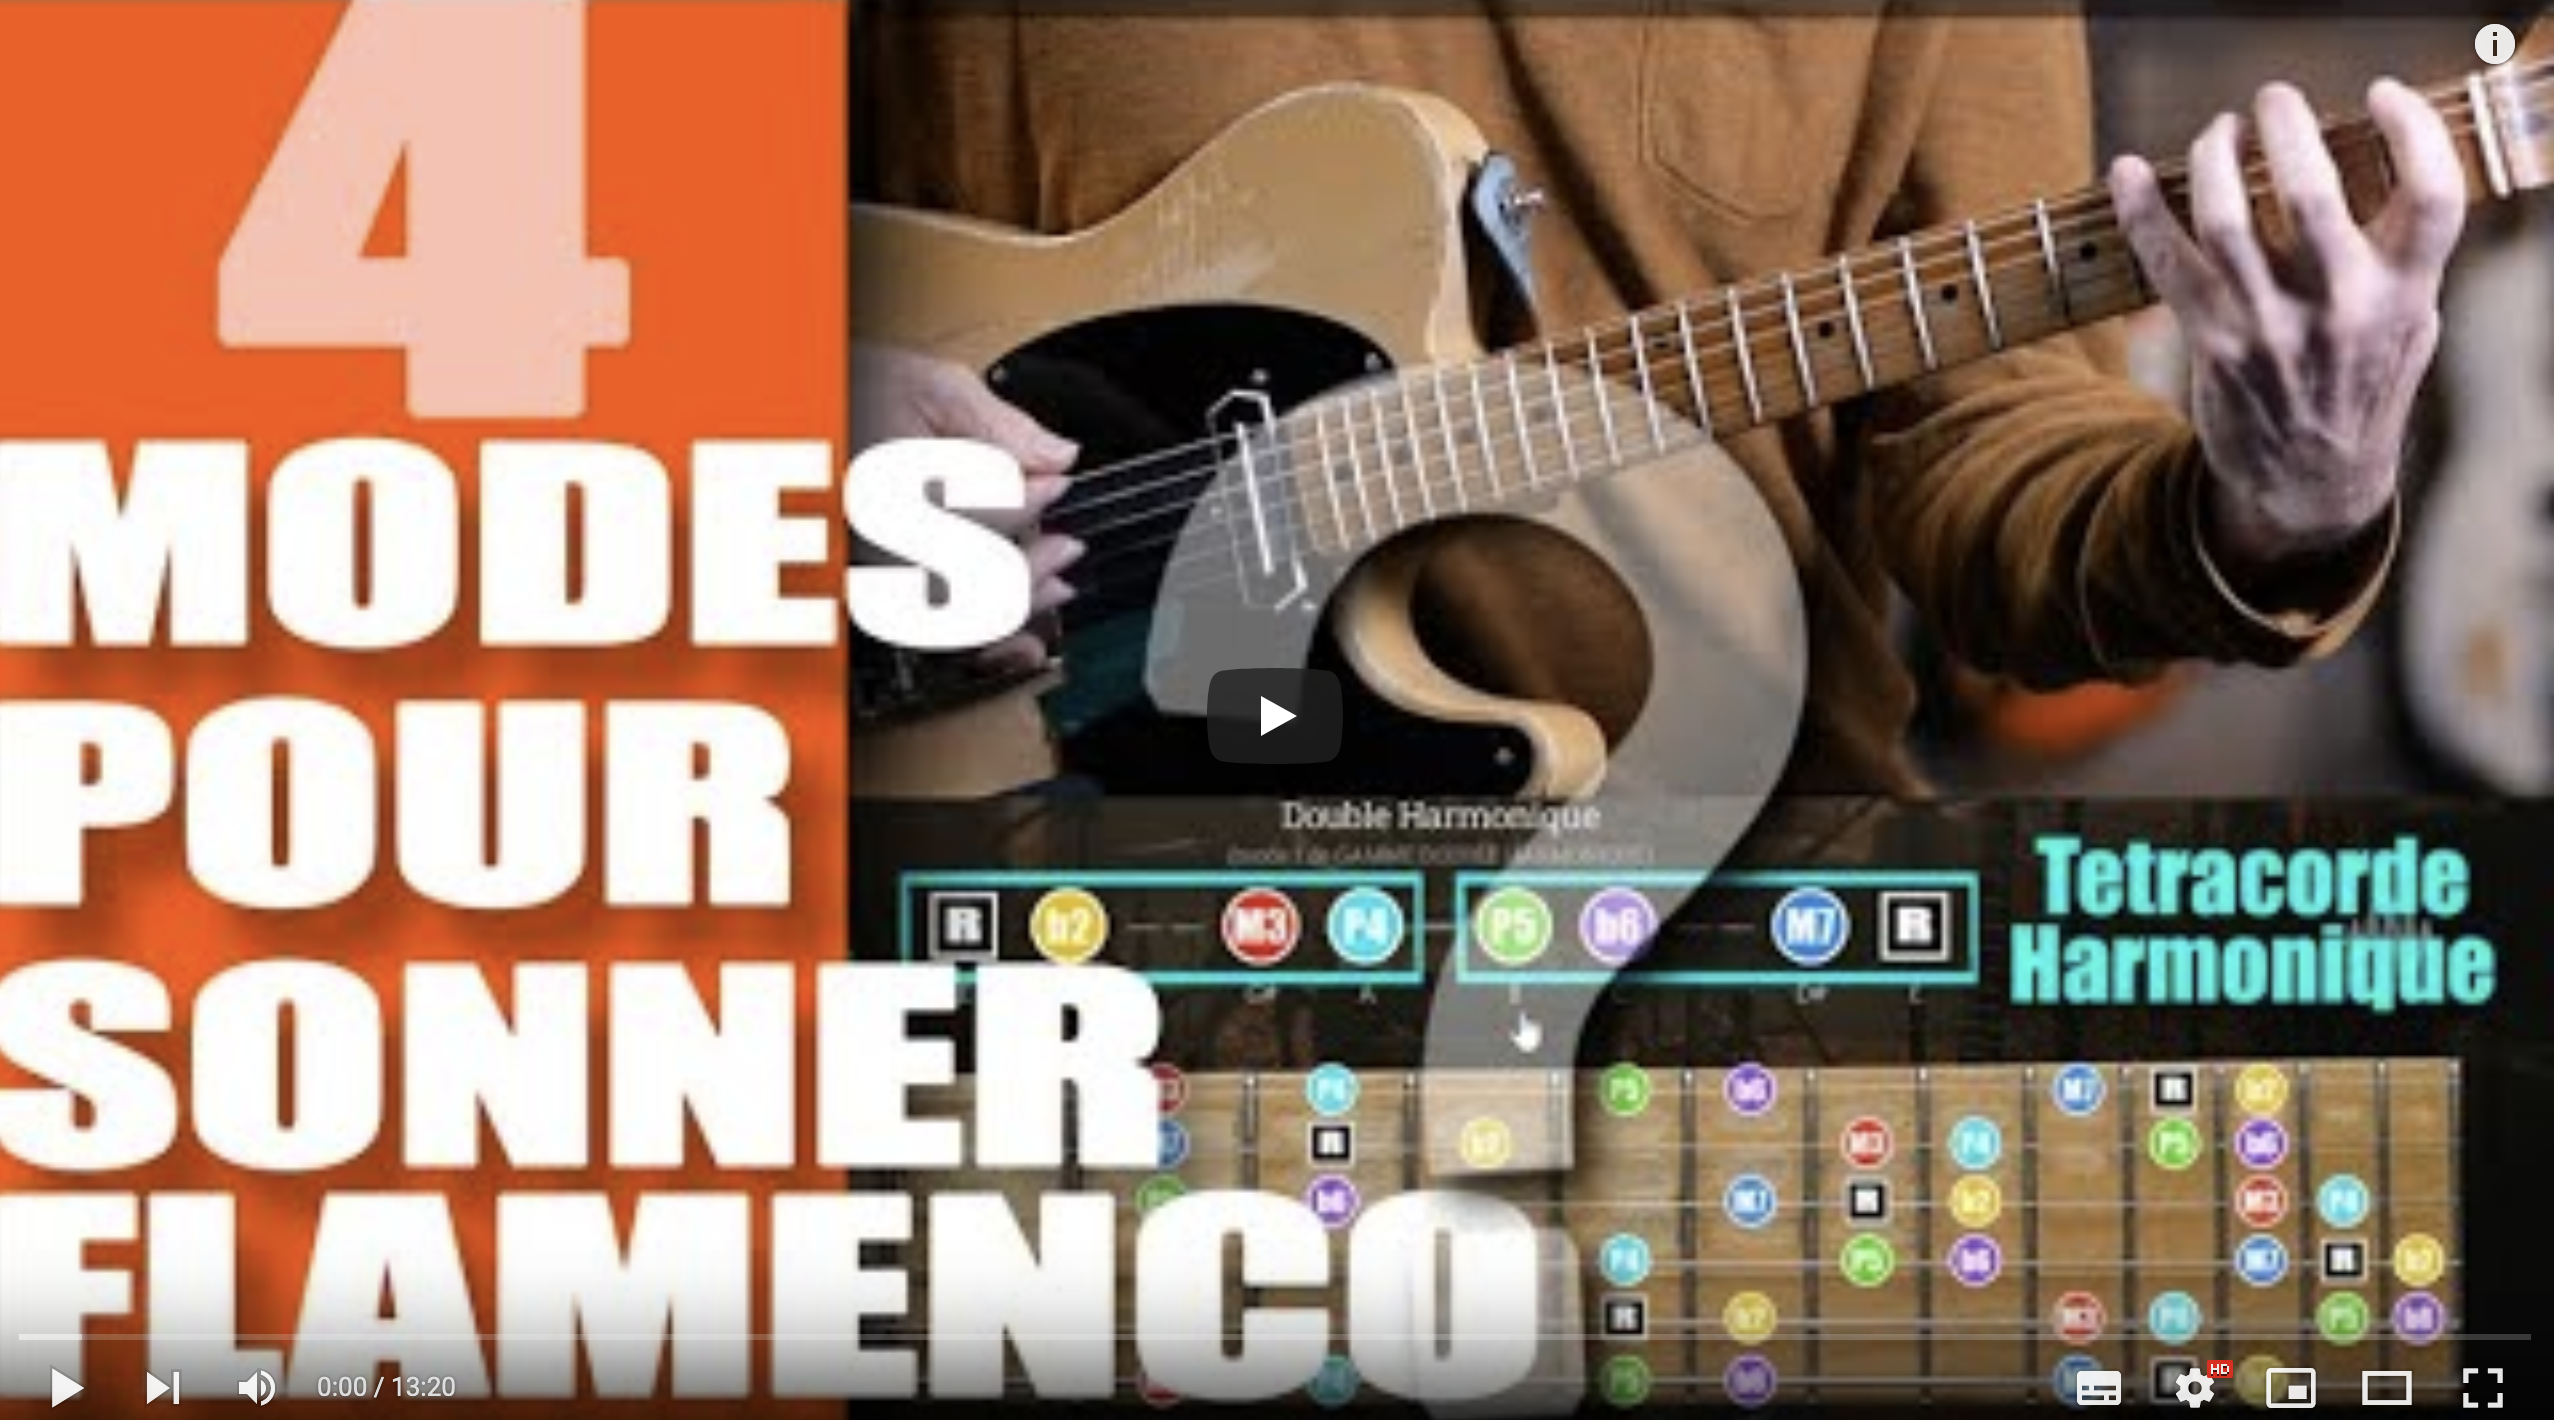 4 modes pour sonner flamenco